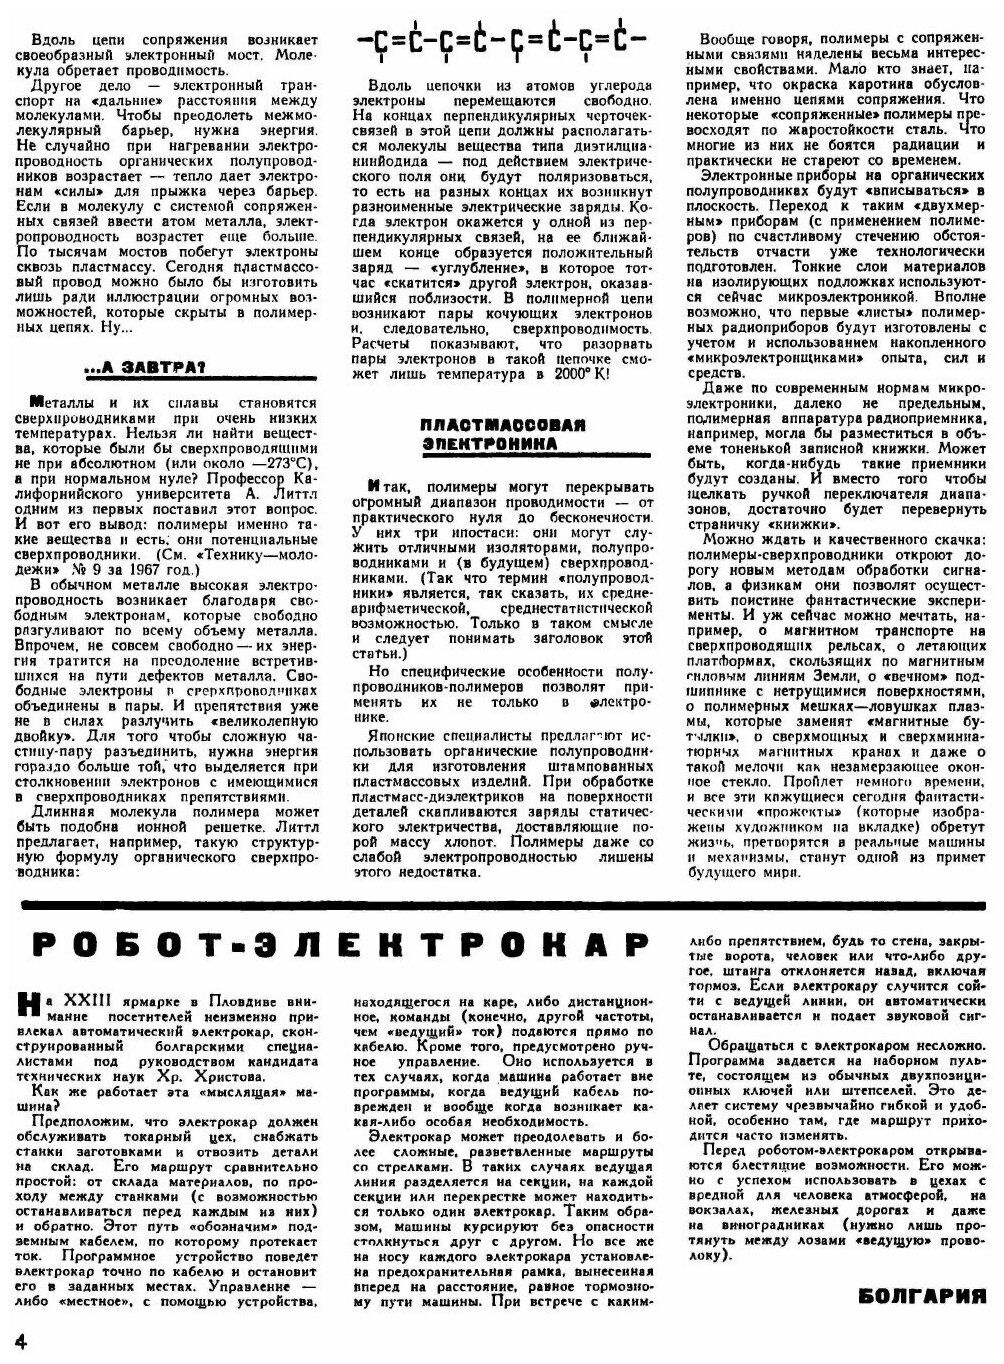 Журнал "Техника молодежи". № 01, 1969 - фото №4